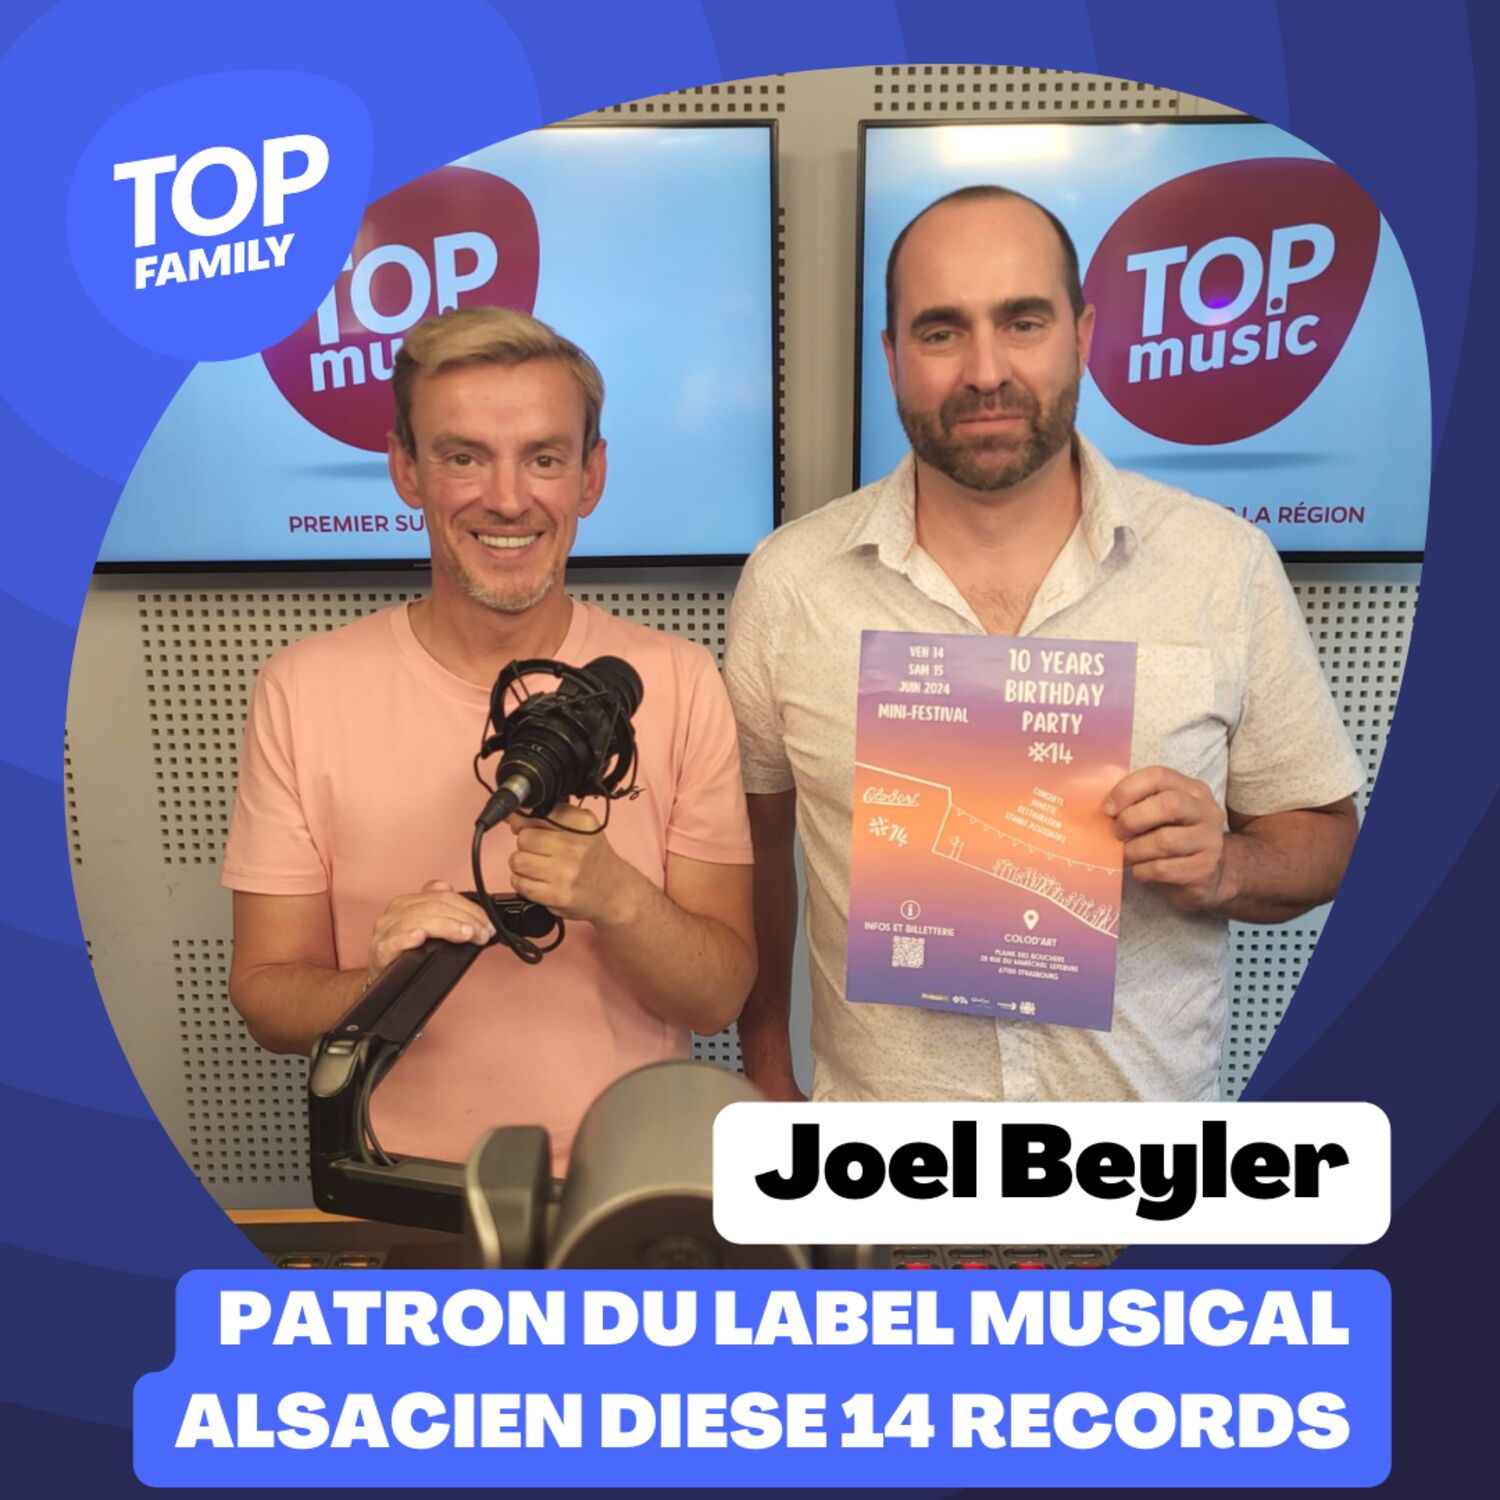 Joel Beyler, patron du label musical Diese 14 Records